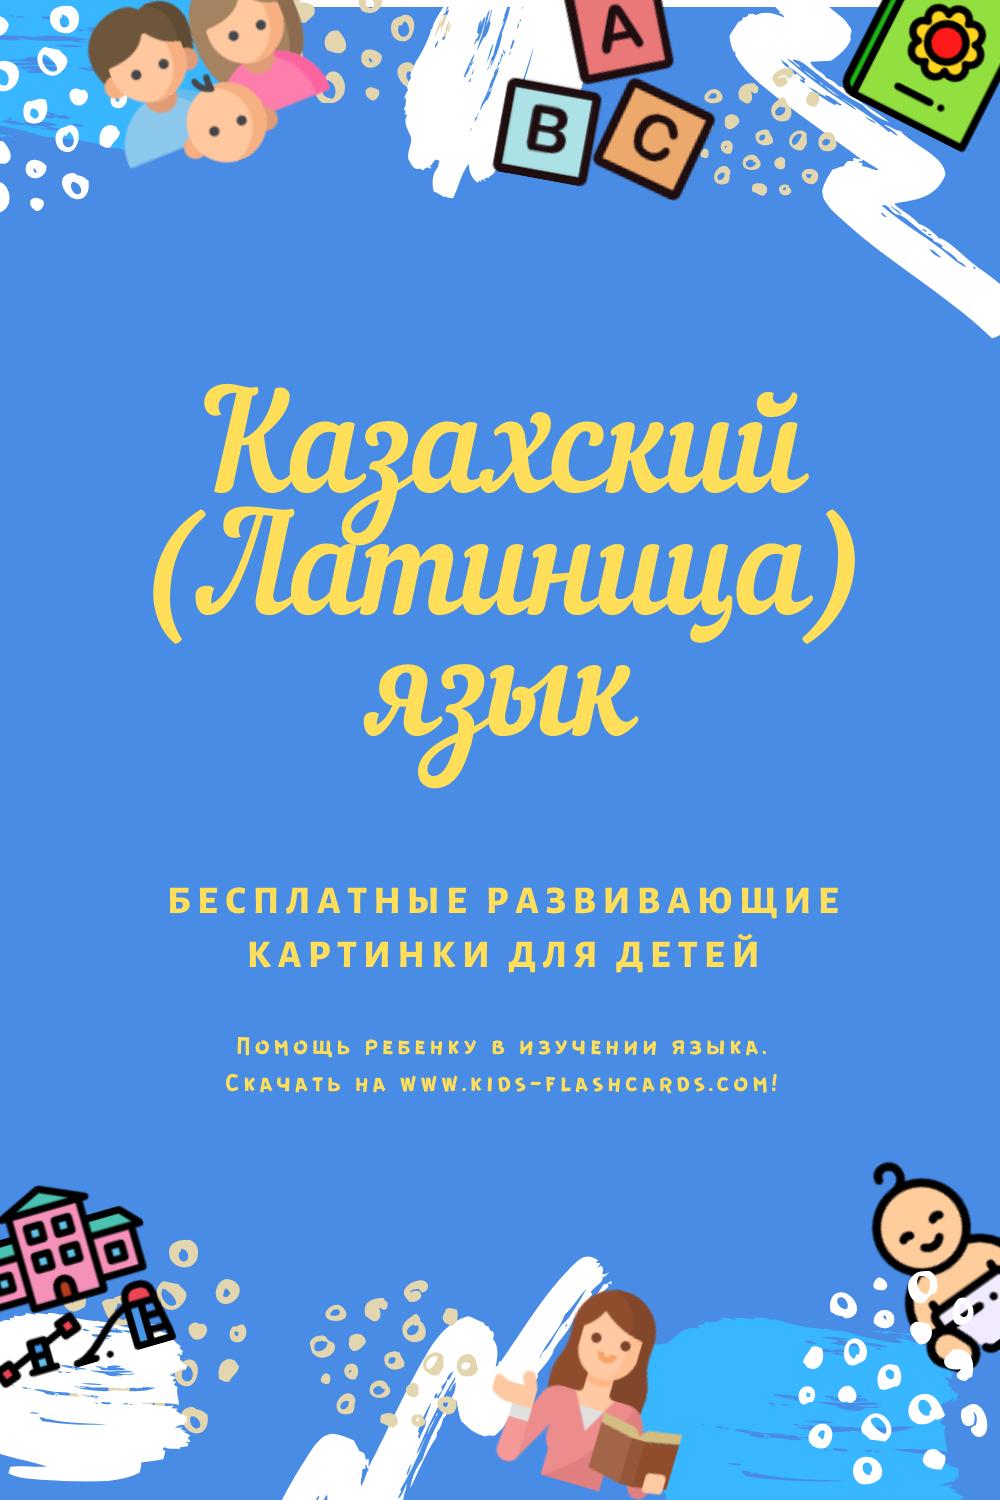 Казахский(латиница) язык - бесплатные материалы для печати